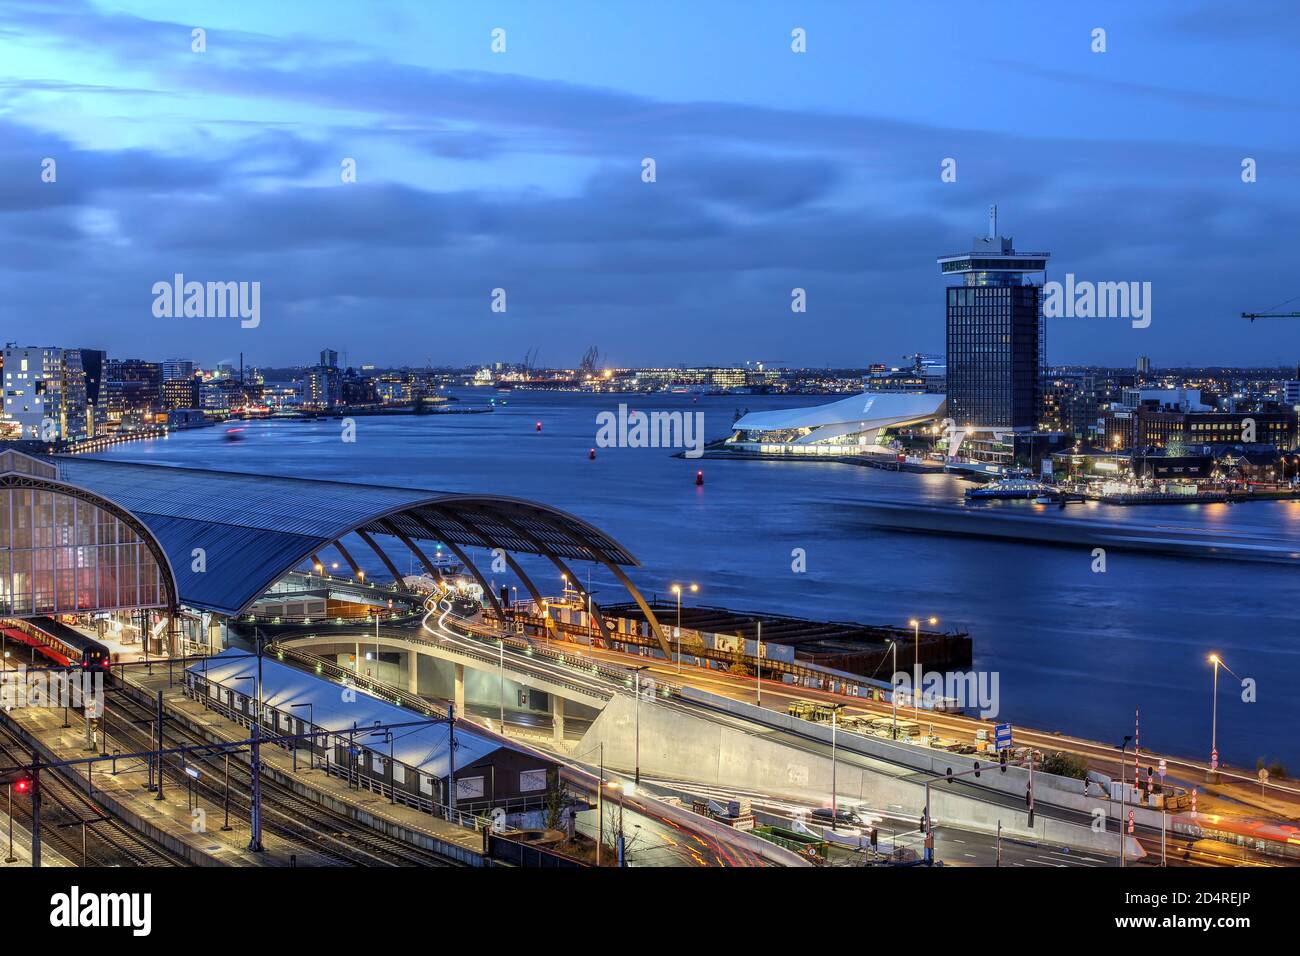 Vue sur le front de mer d'Amsterdam, face à la rivière IJ, avec A'dam Toren et Amsterdam Eye. Banque D'Images